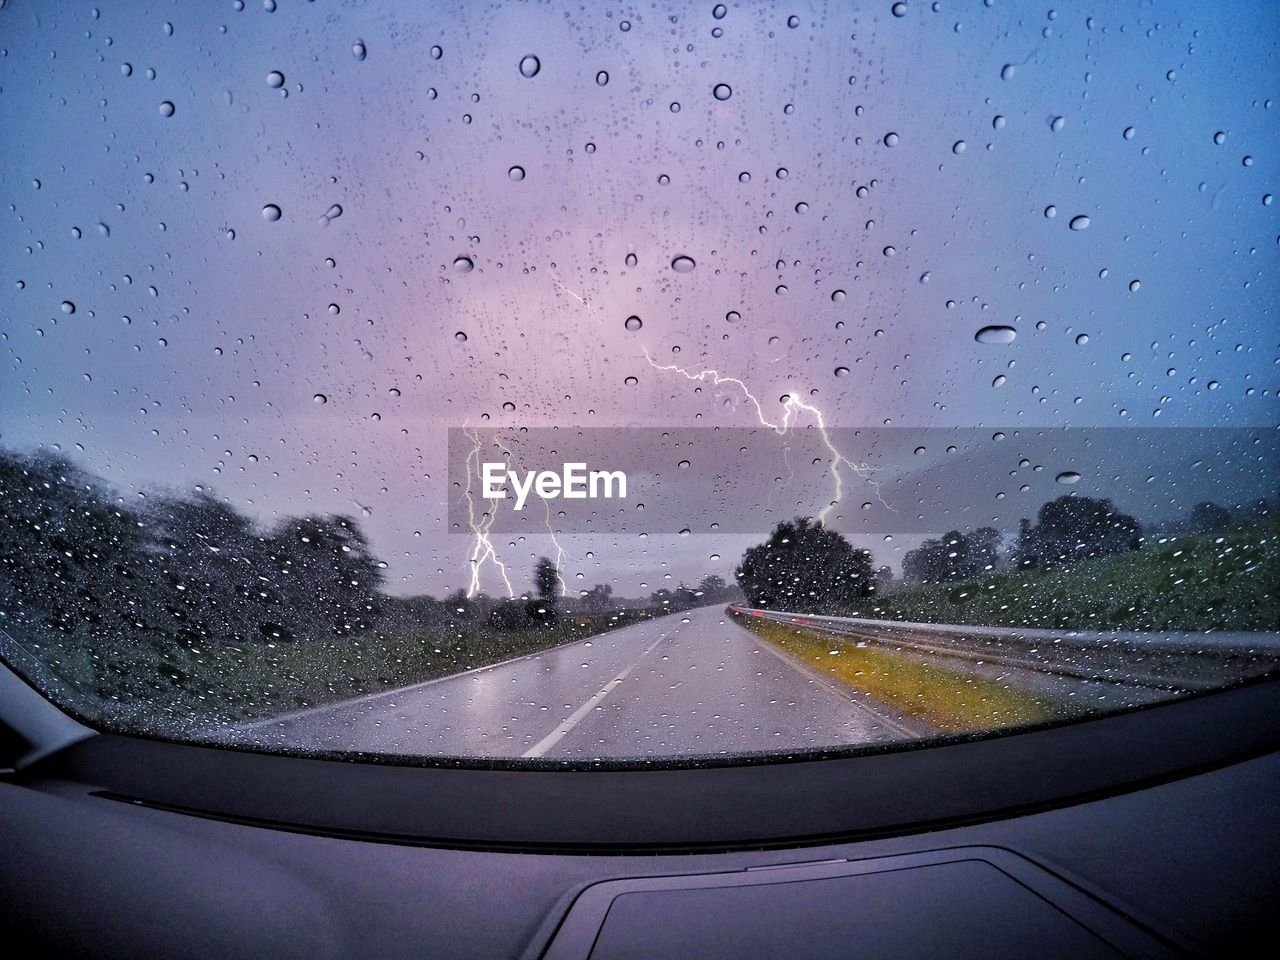 Lightning seen through wet glass windshield